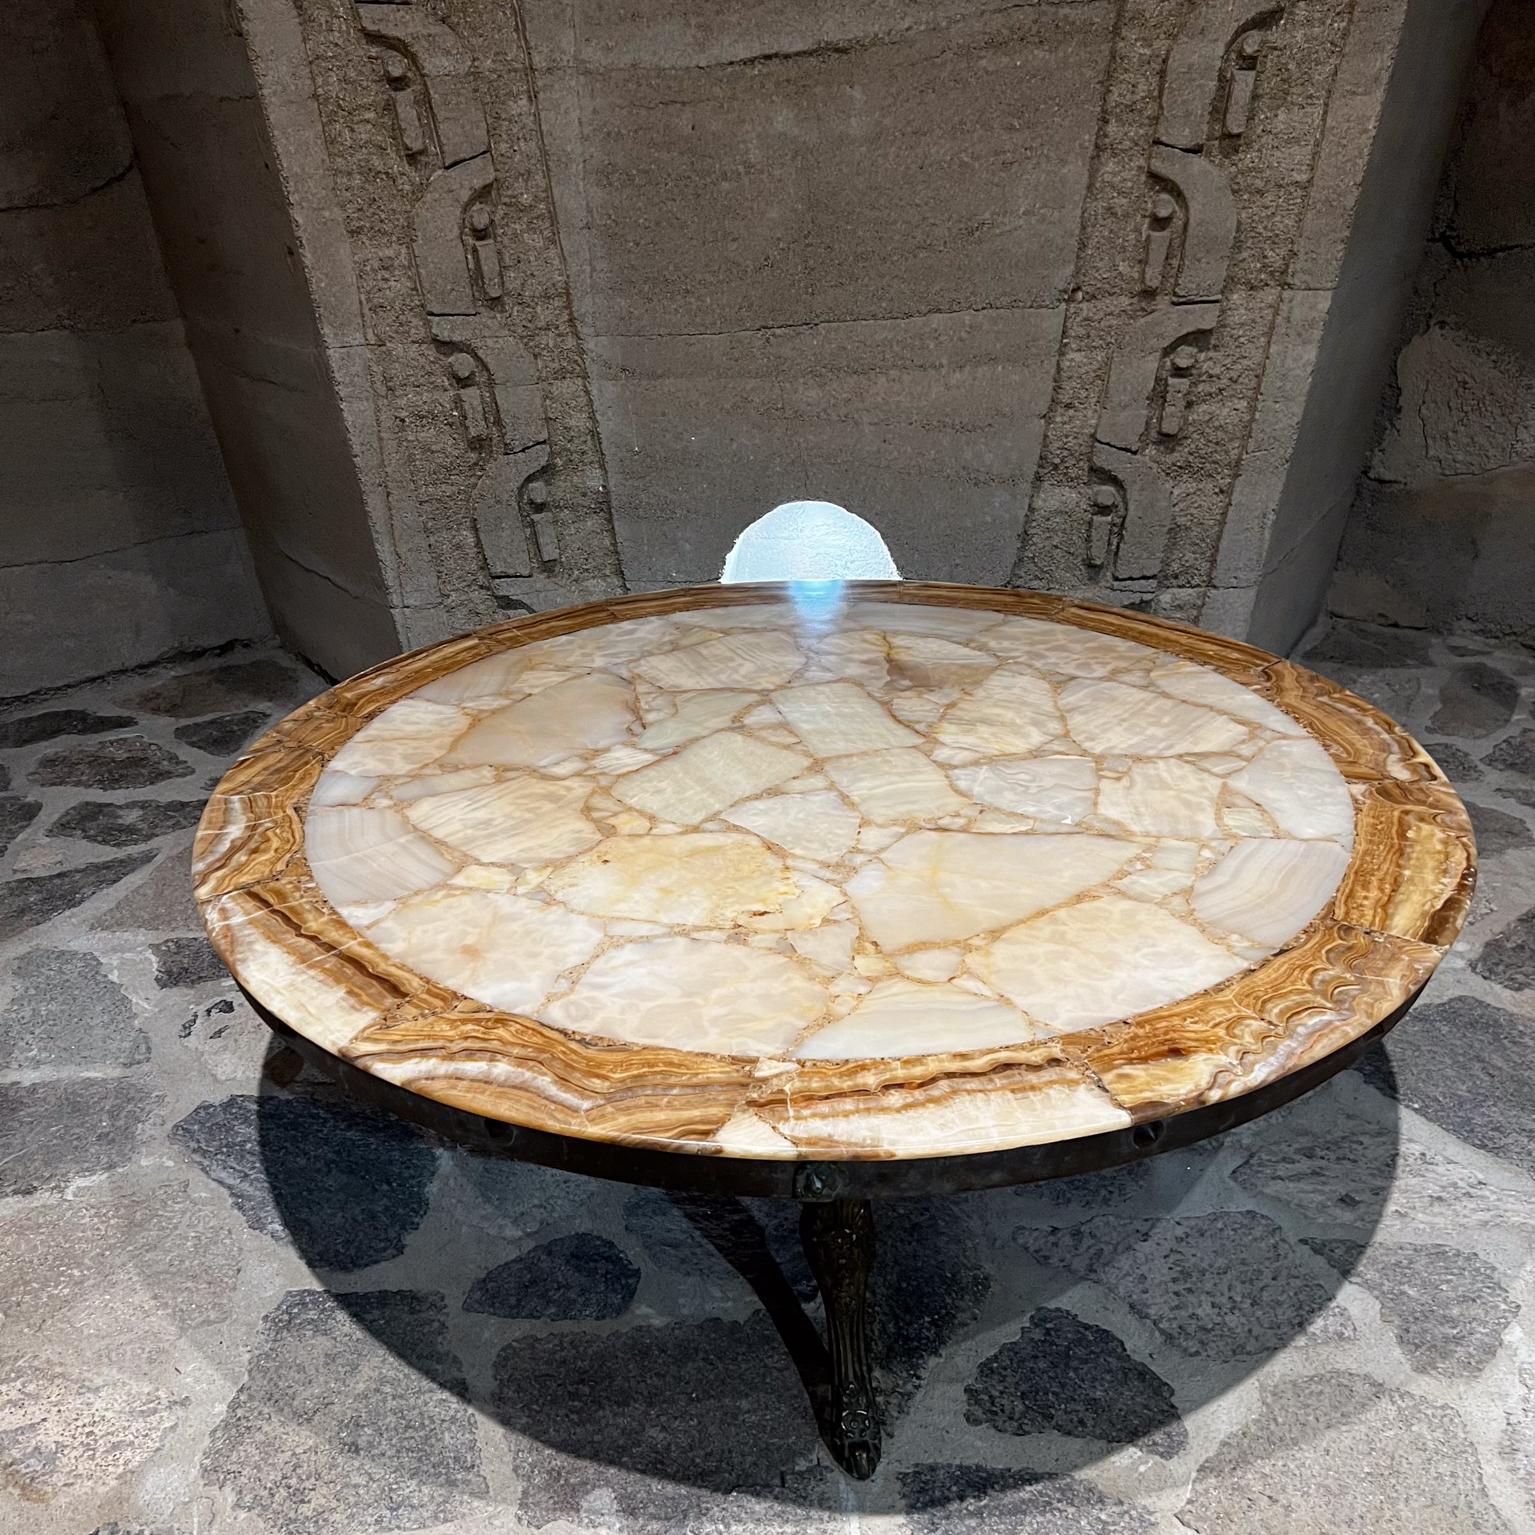 AMBIANIC présente
1960s Muller of Mexico Glamorous Modern Round Onyx Stone Coffee Table Sculptural Cabriole Legs
État d'origine vintage d'occasion. Le plateau a été restauré, nouvelle finition satinée.
Nouveaux pieds en bronze.
47,25 diamètre x 13